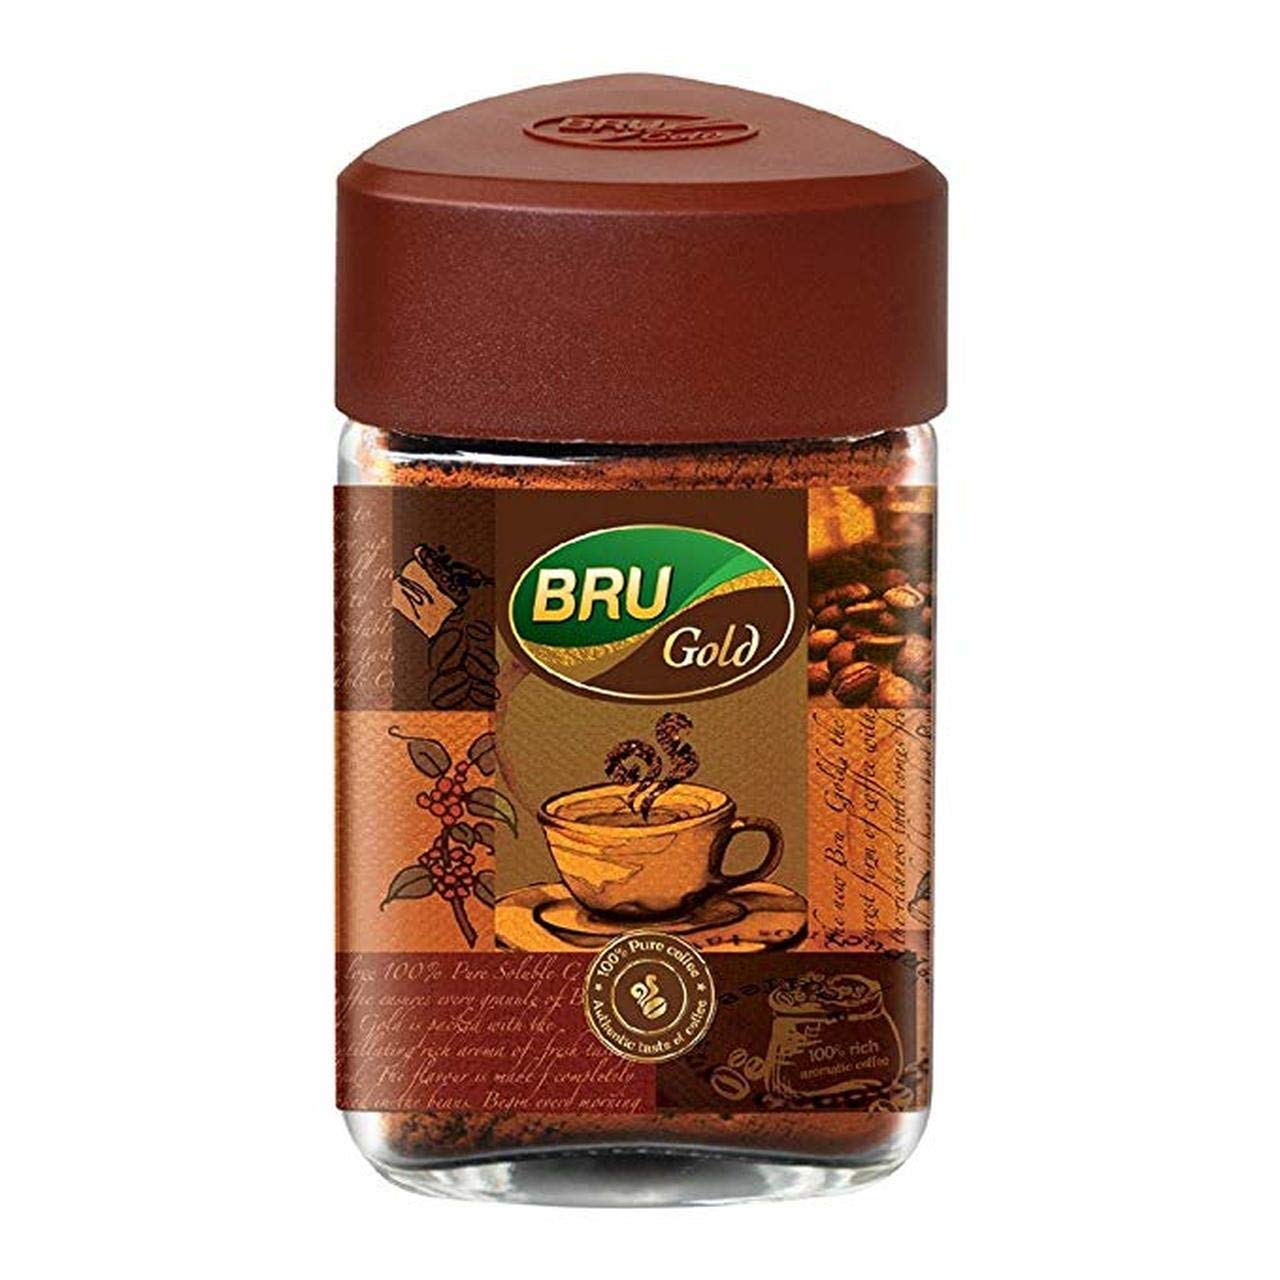 Bru Gold Instant Coffee powder Jar